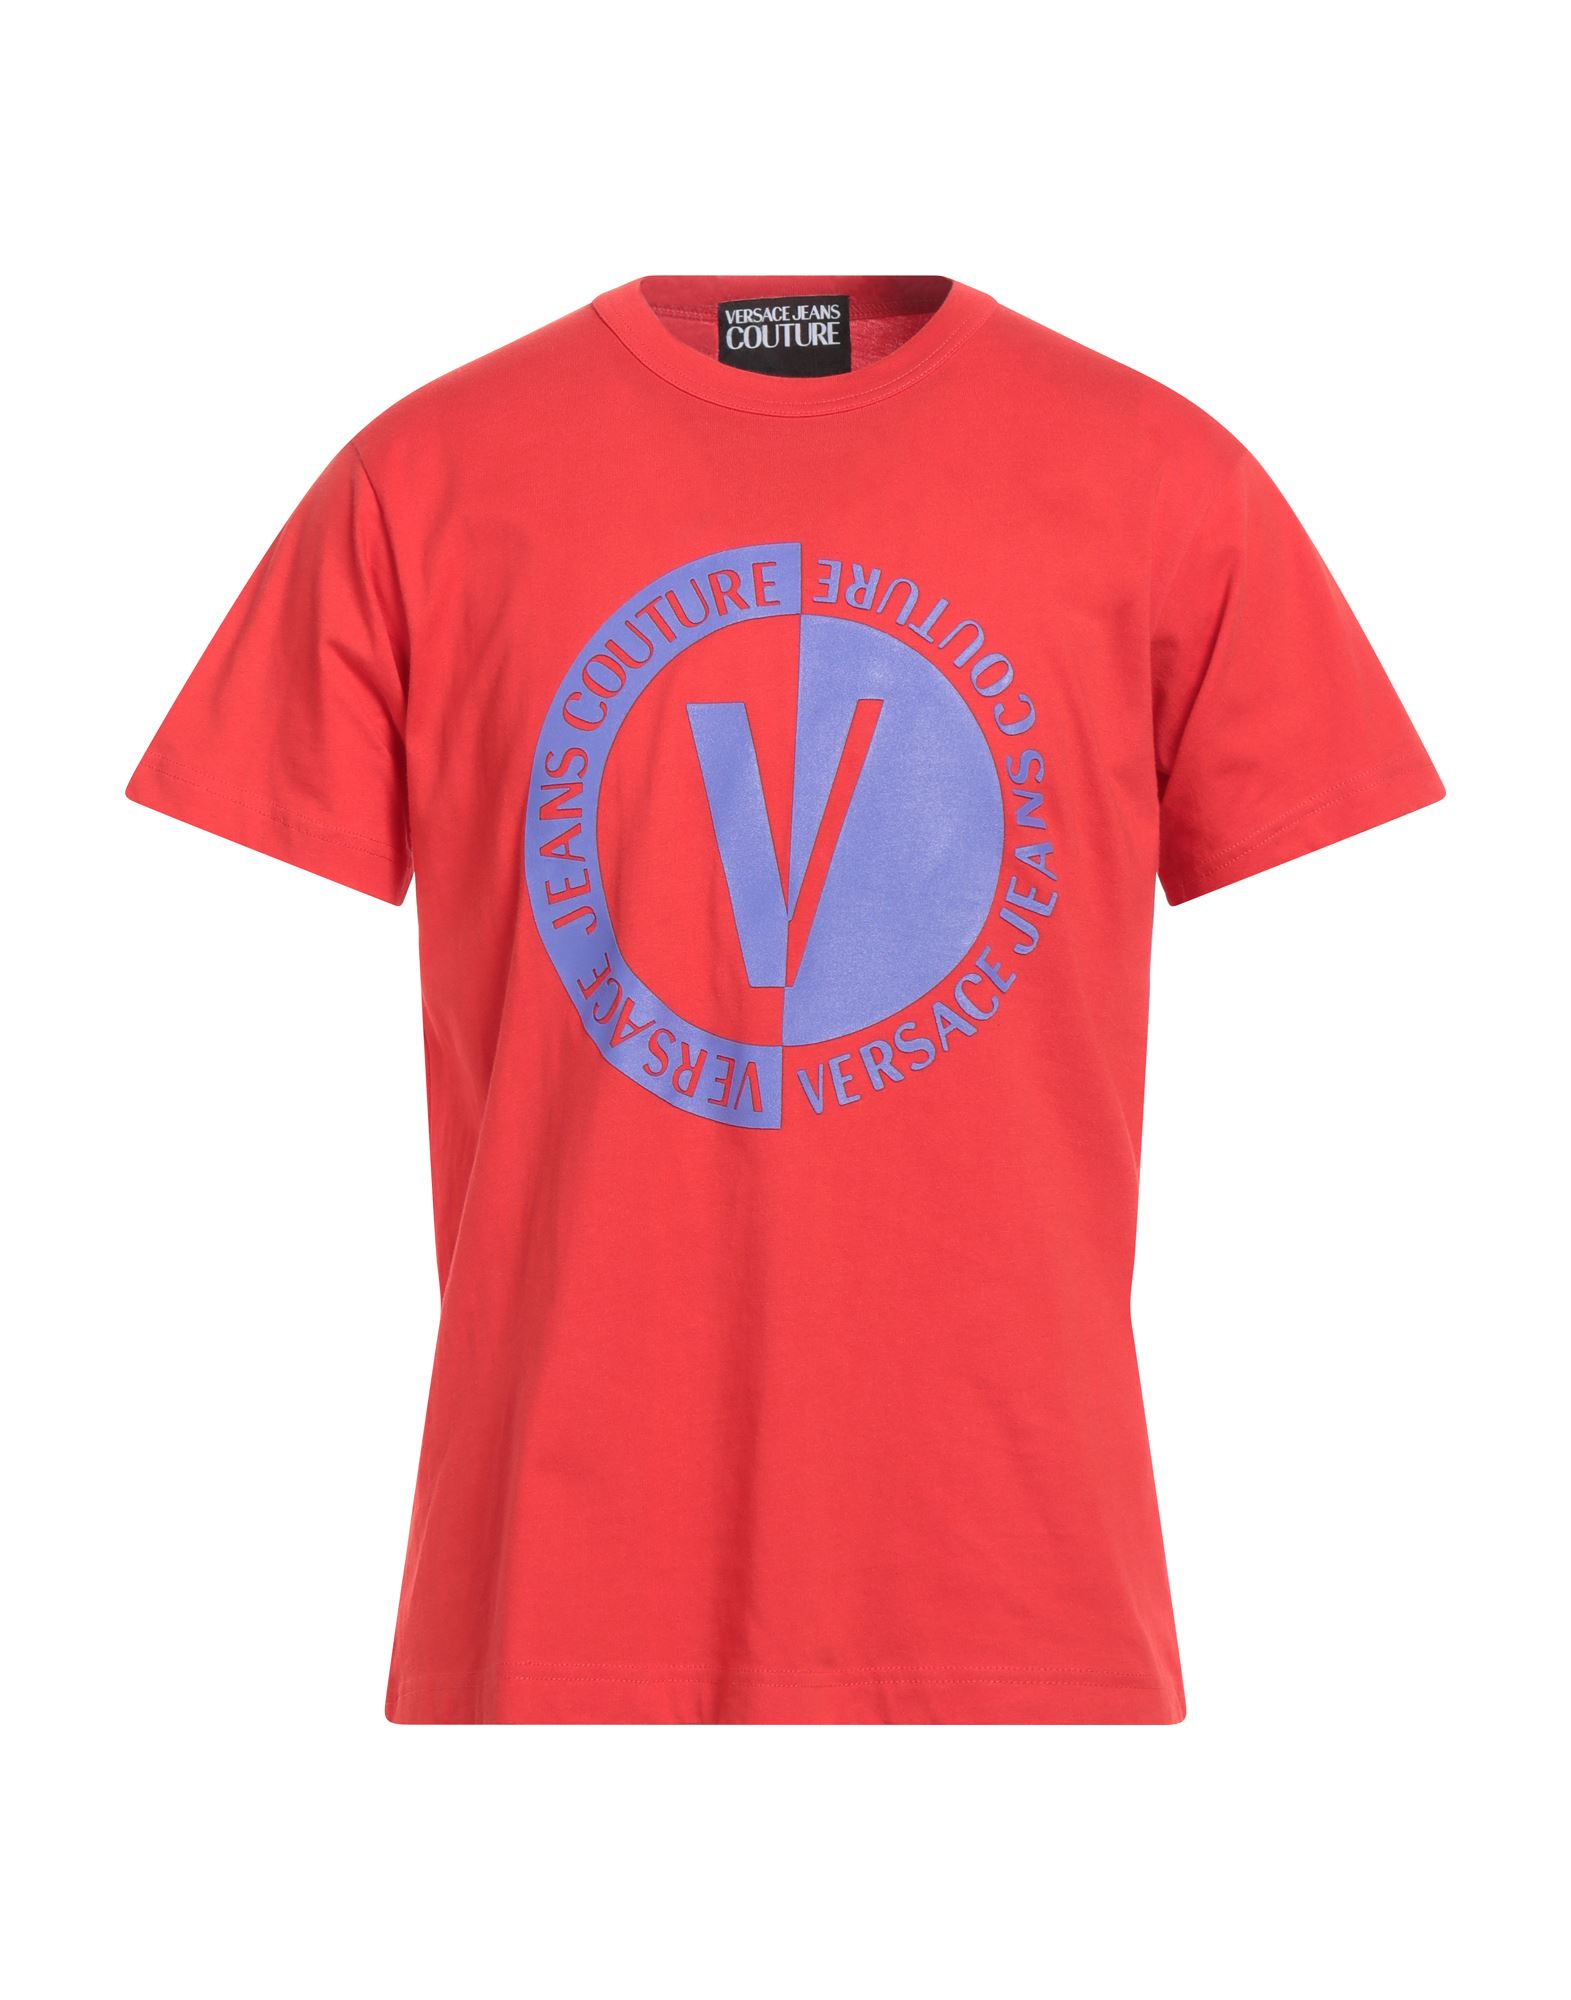 VERSACE JEANS COUTURE T-shirts Herren Rot von VERSACE JEANS COUTURE